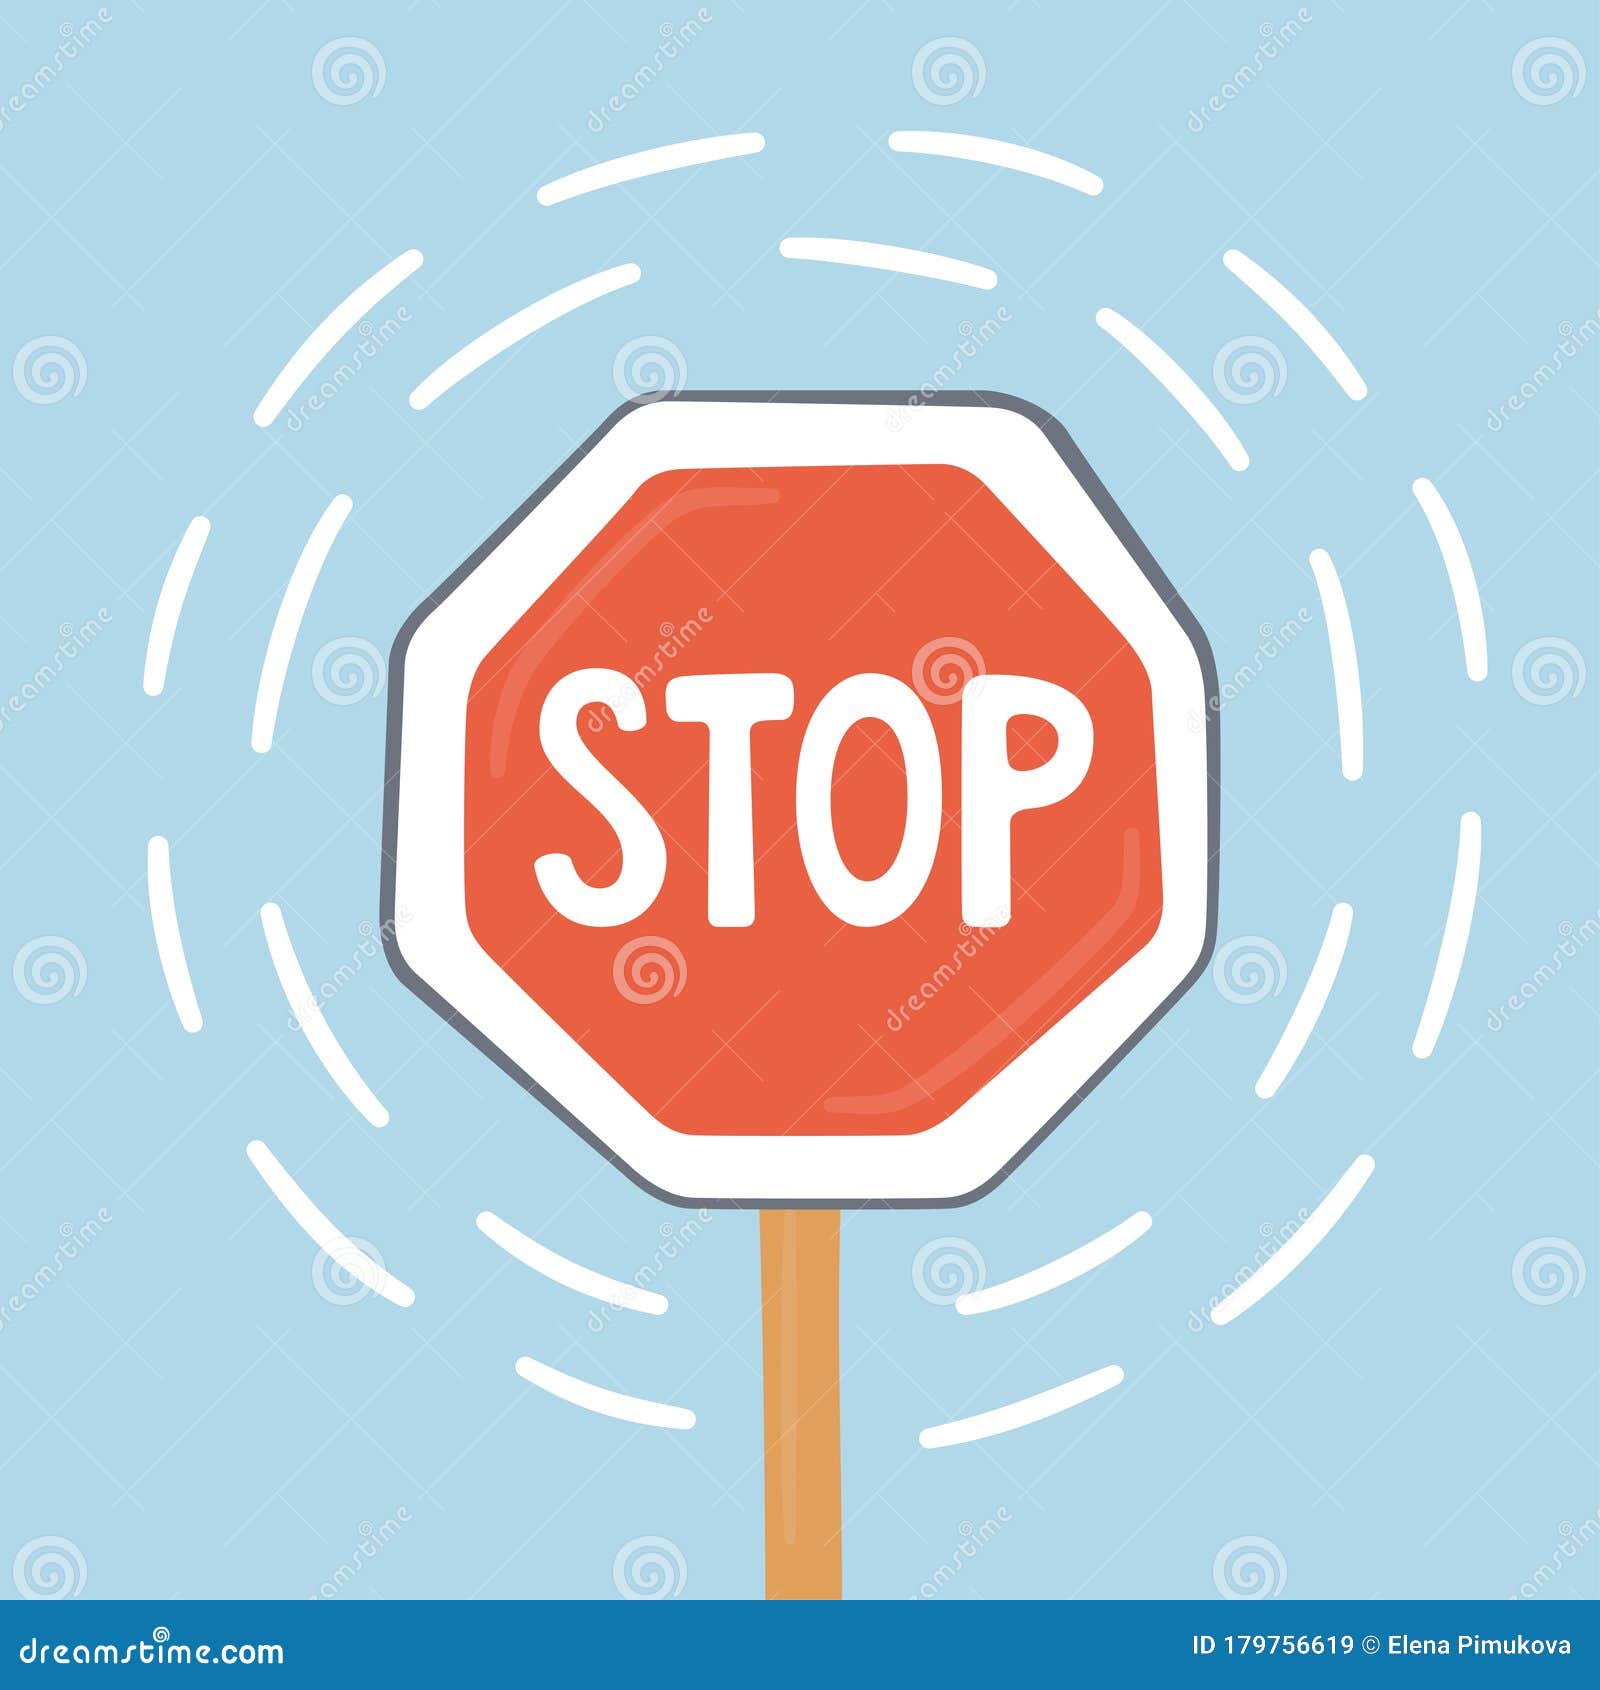 Tấm biển STOP không chỉ là một tín hiệu giao thông, nó còn là một biểu tượng của sự an toàn trên đường. Hãy xem hình ảnh liên quan để xem tại sao đây là một biển hiệu vô cùng quan trọng trên mọi con đường.